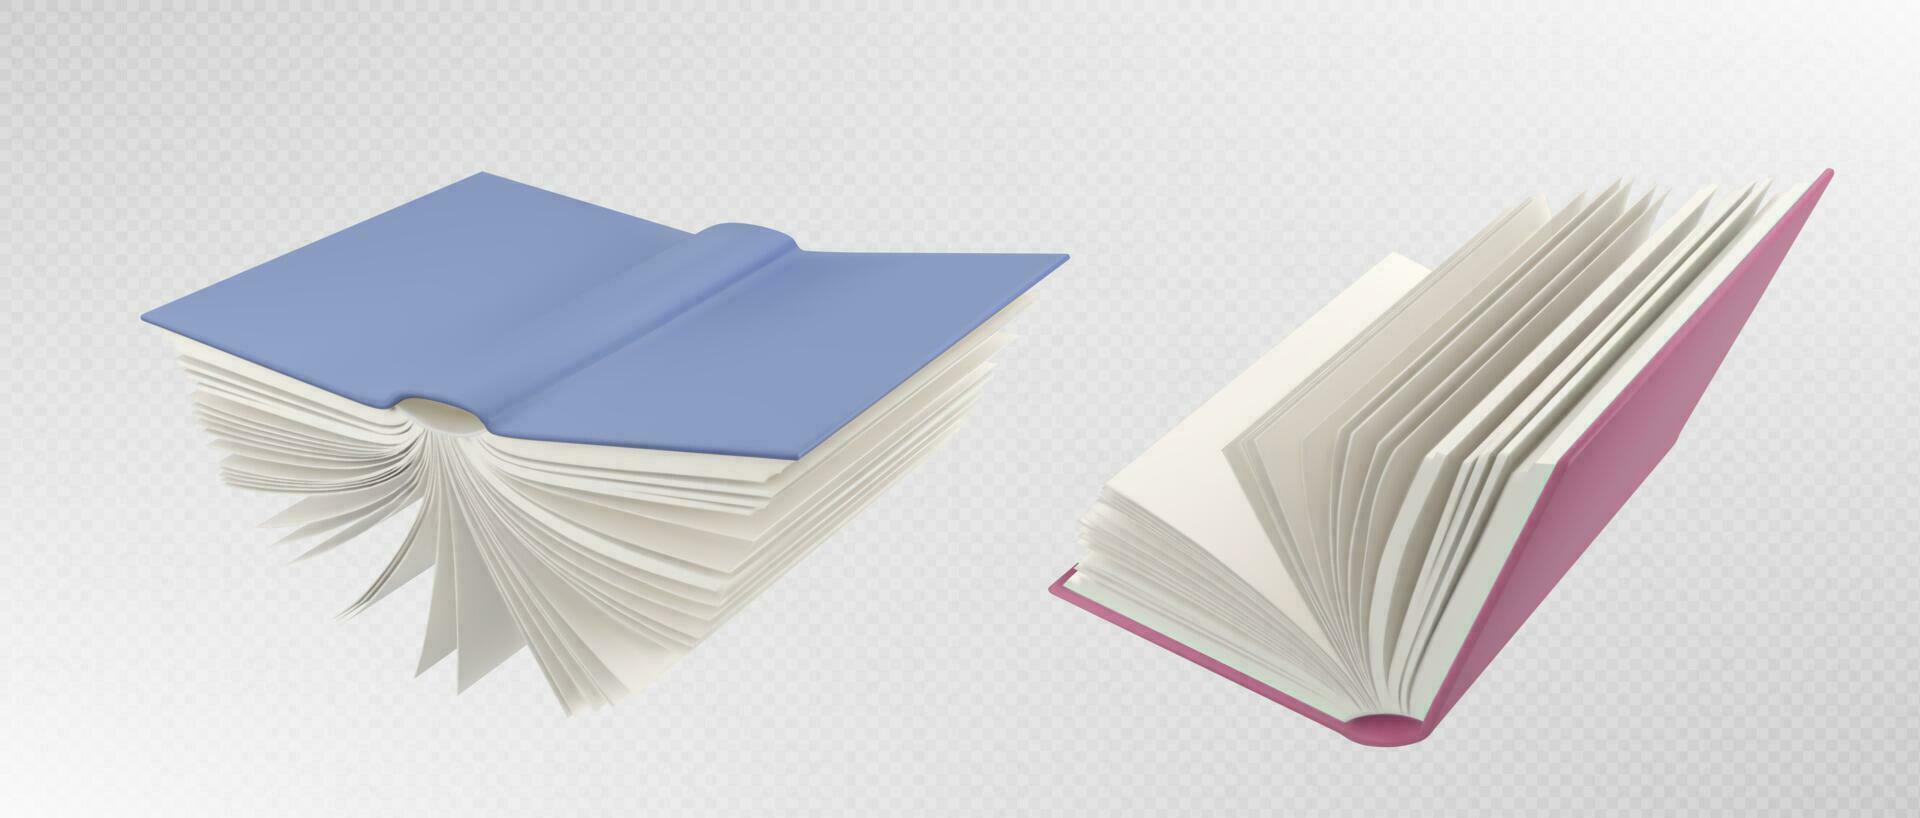 Open vlieg school- papier boek vector illustratie